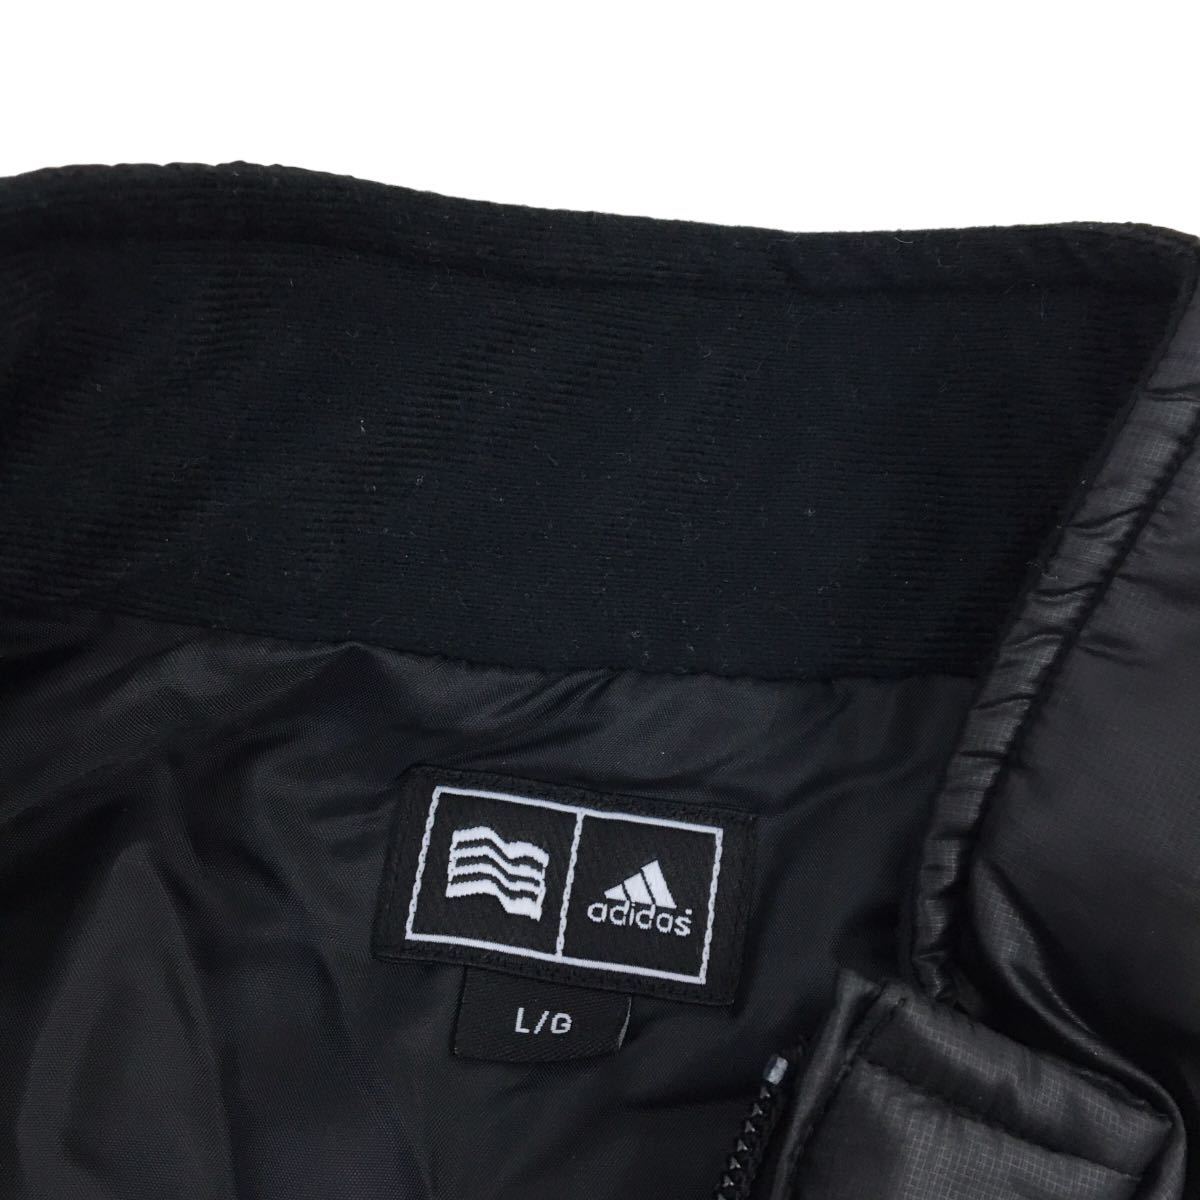 D506 adidas アディダス GOLF ゴルフ ゴルフウェア 長袖 ジップアップ 中綿 ジャケット 軽量 上着 羽織り トップス ブラック メンズ L_画像7